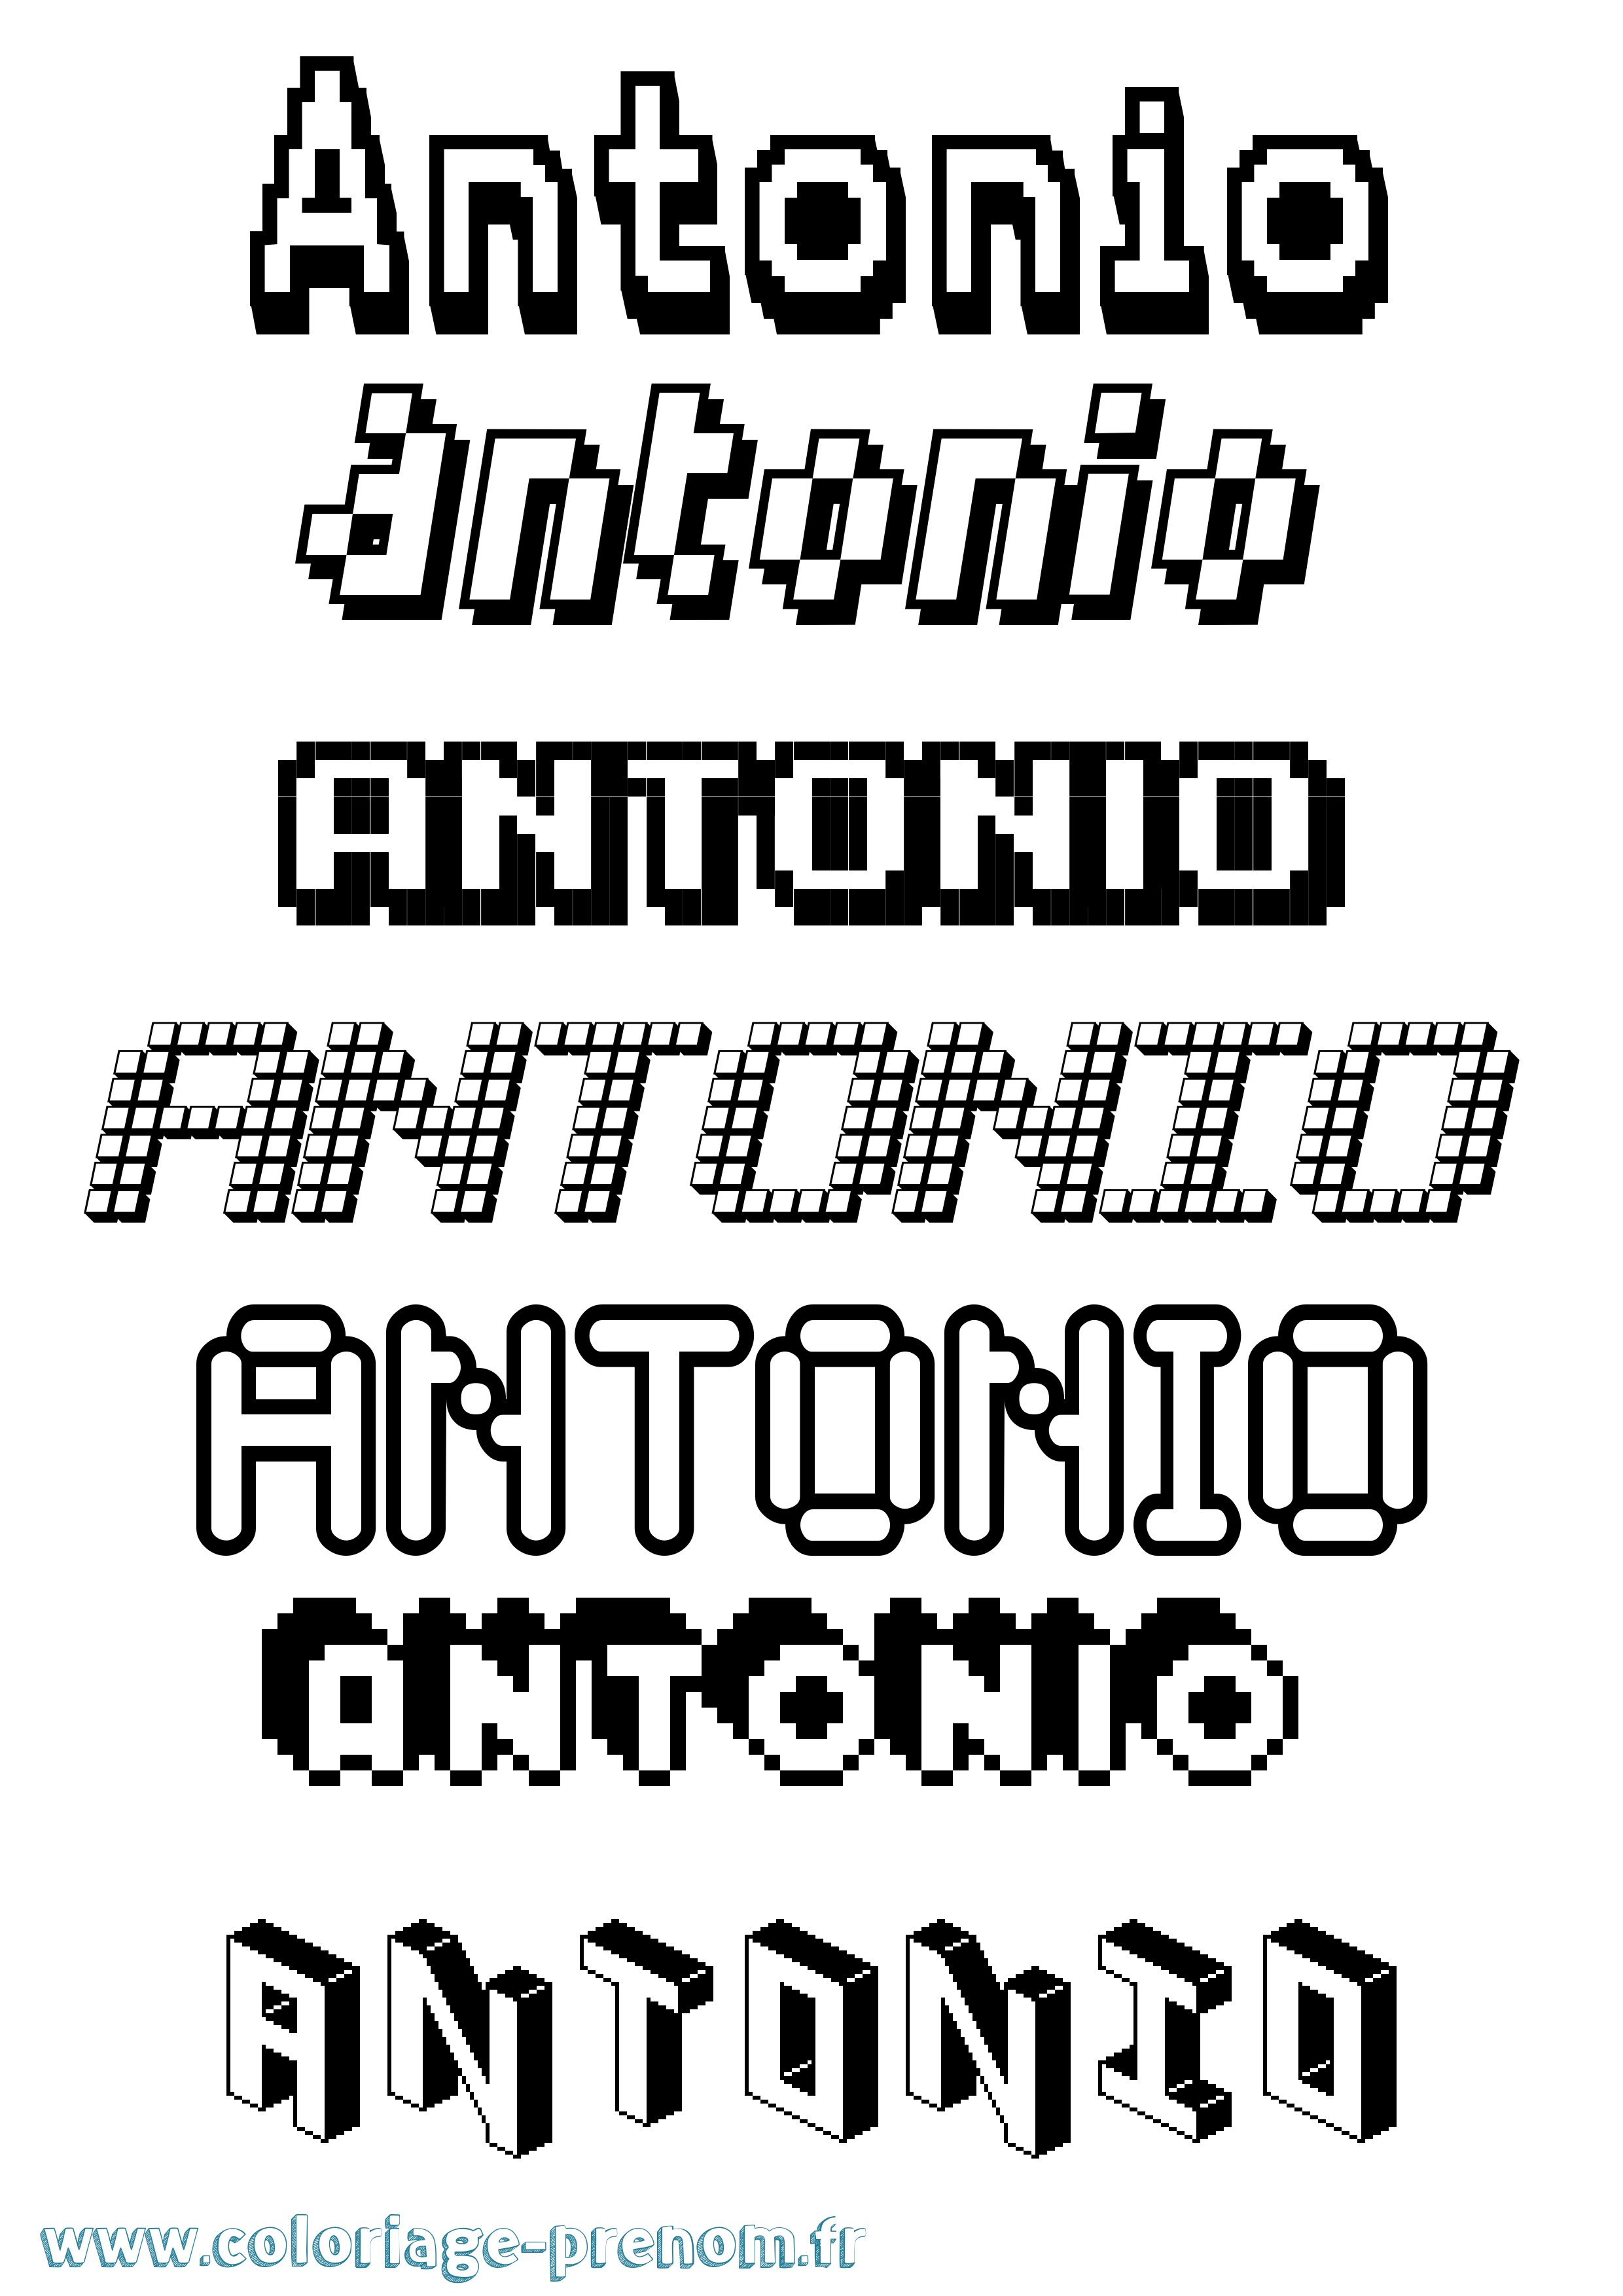 Coloriage prénom Antonio Pixel